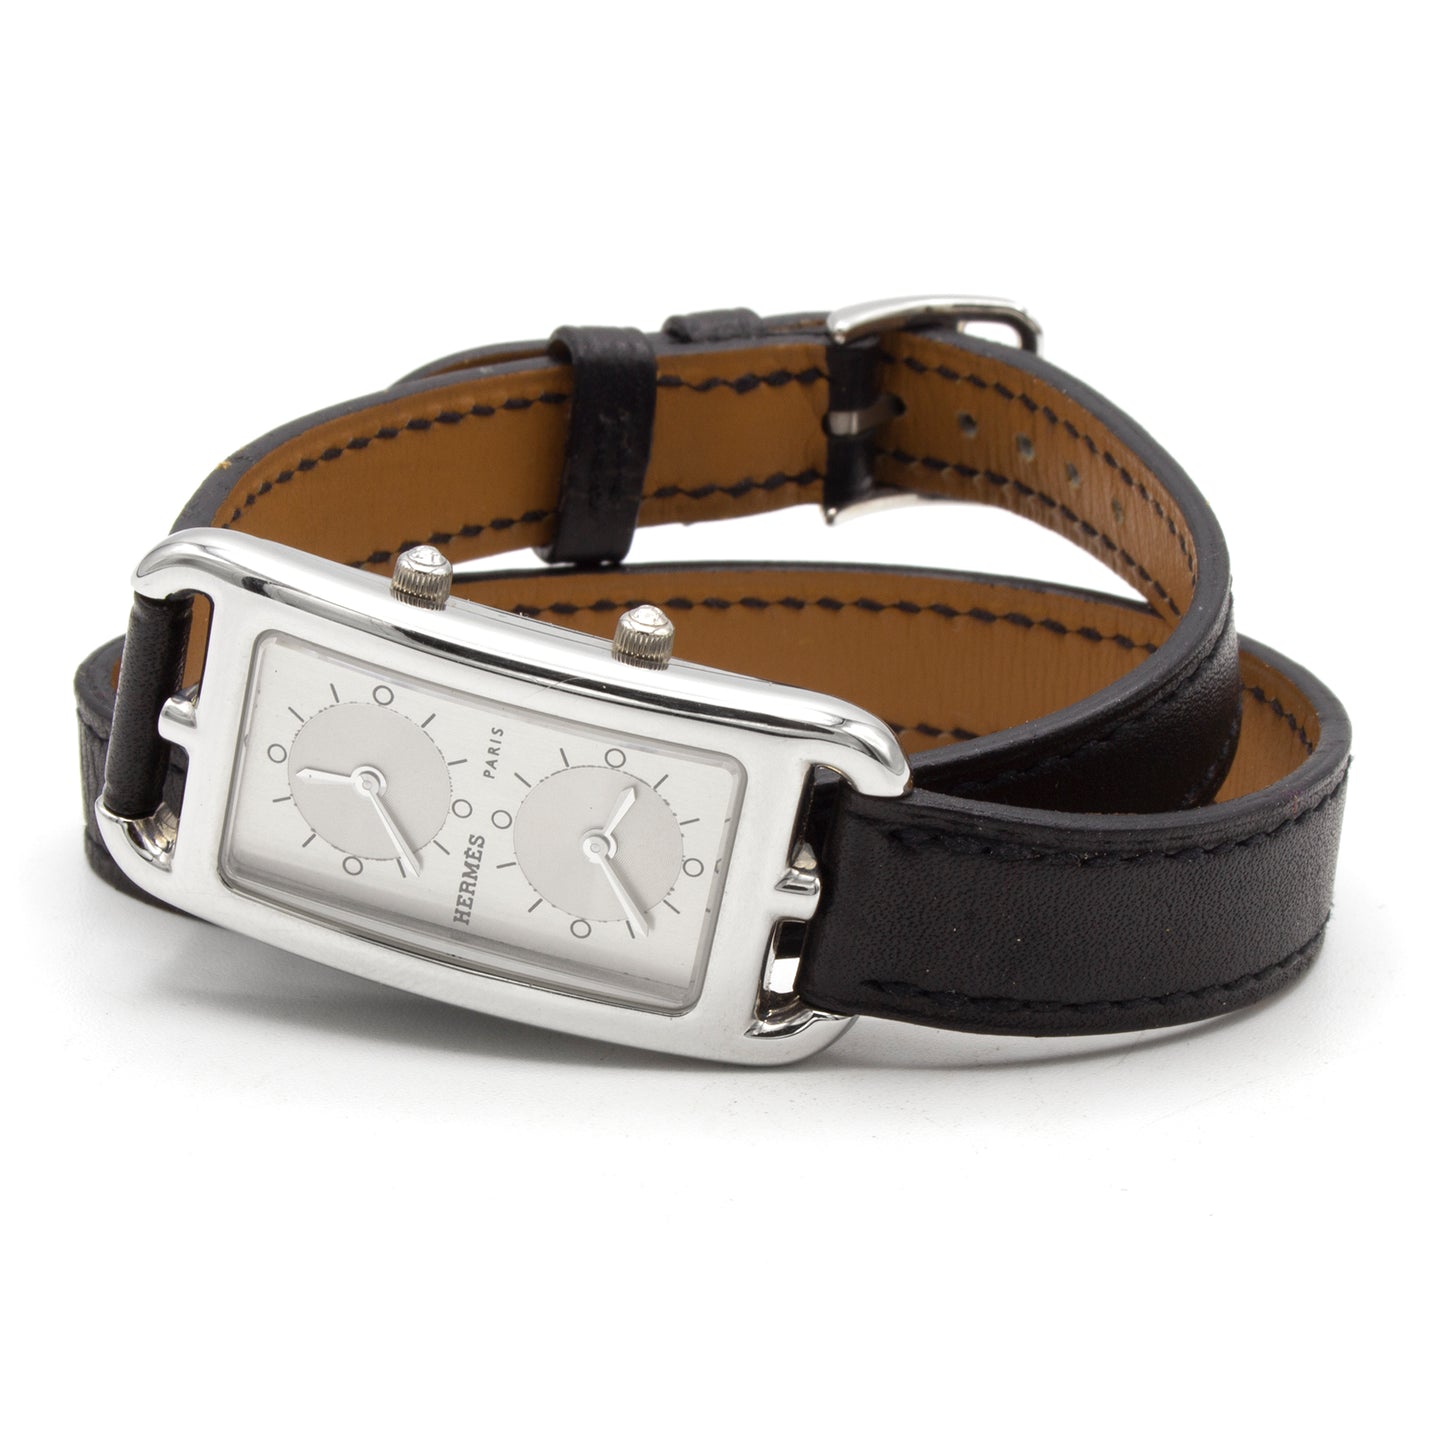 Hermès Cape Cod CC3.210 Dual Time watch